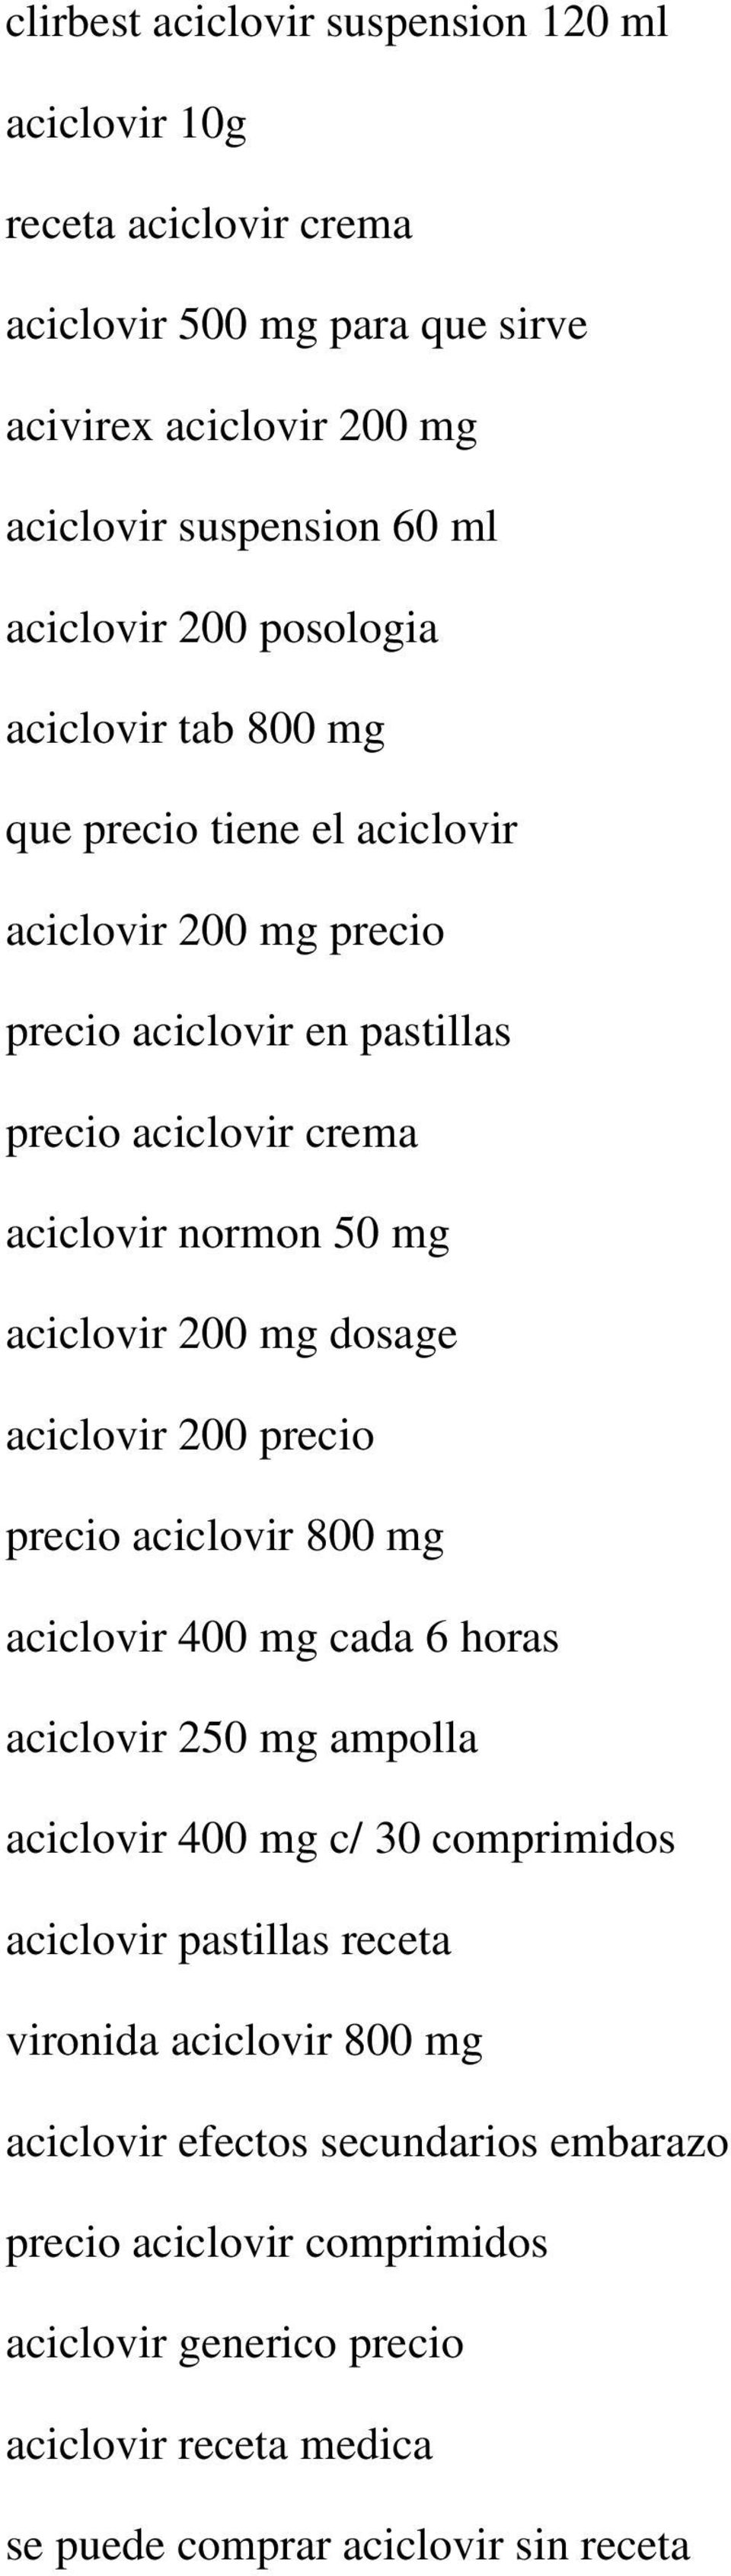 mg dosage aciclovir 200 precio precio aciclovir 800 mg aciclovir 400 mg cada 6 horas aciclovir 250 mg ampolla aciclovir 400 mg c/ 30 comprimidos aciclovir pastillas receta